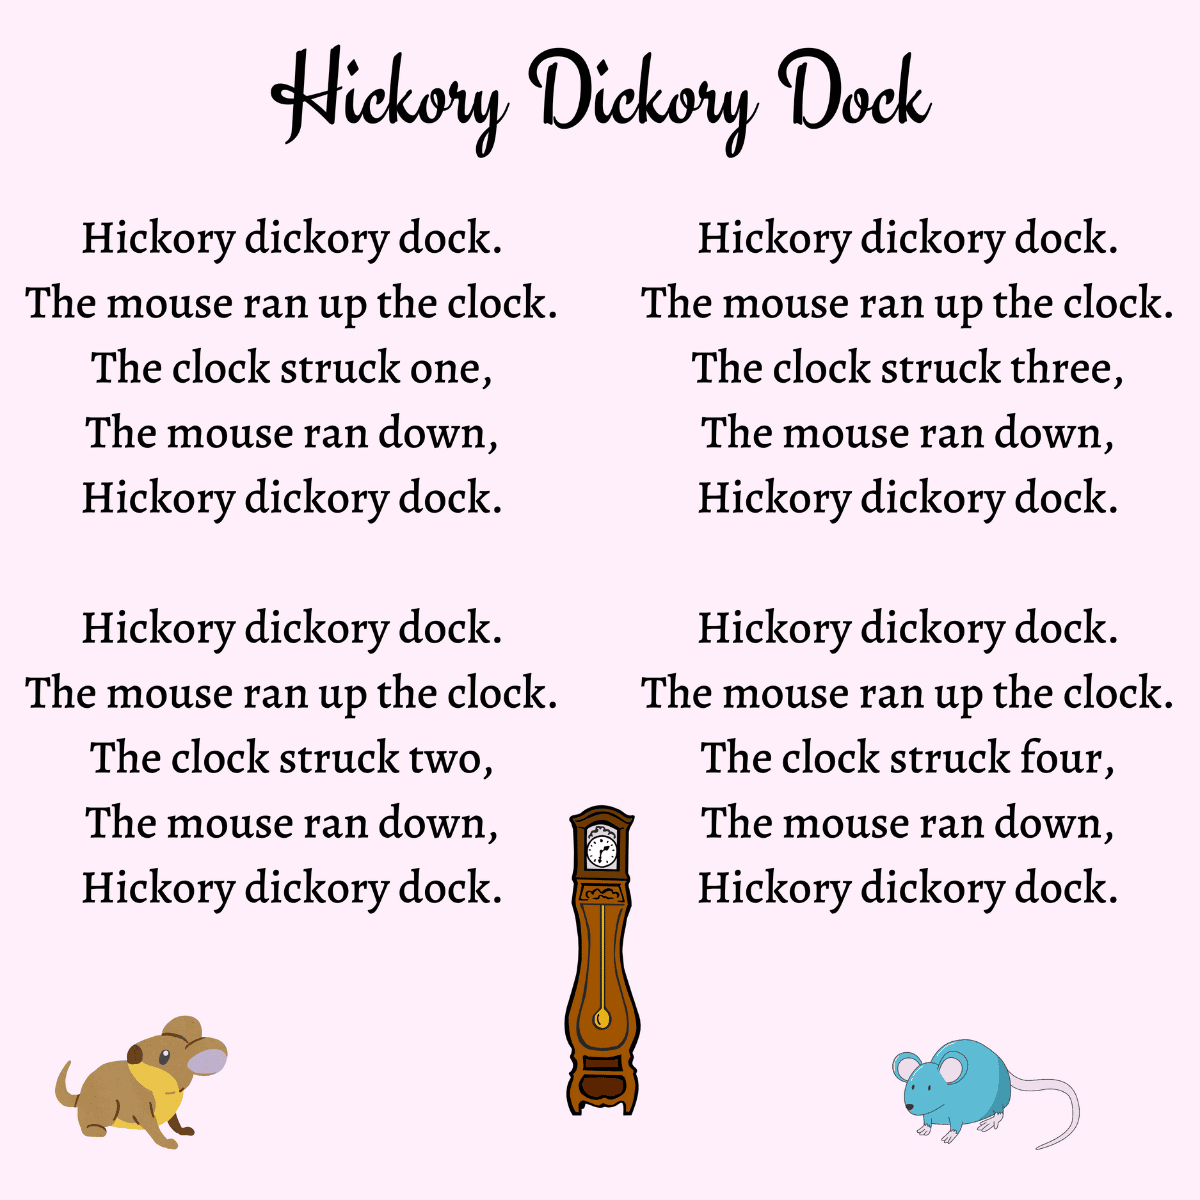 Hickory Dickory Dock lyrics